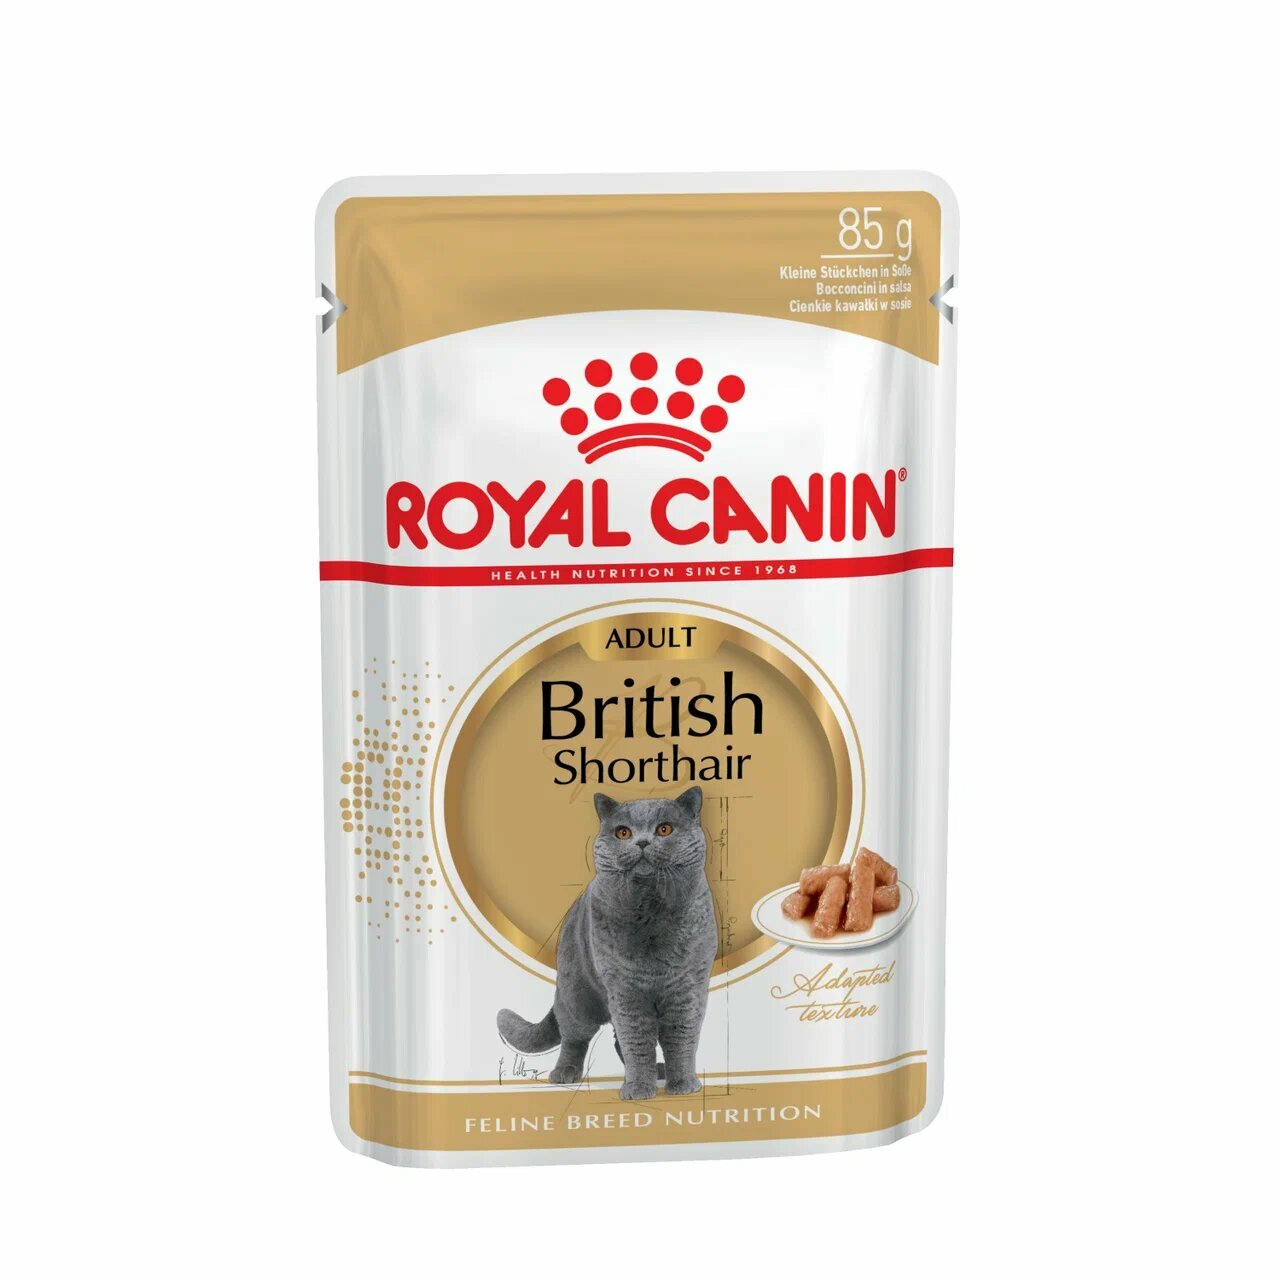 Royal Canin British Shorthair Adult пауч для кошек британской породы (кусочки в соусе) Мясо, 85 г. упаковка 28 шт - фотография № 2